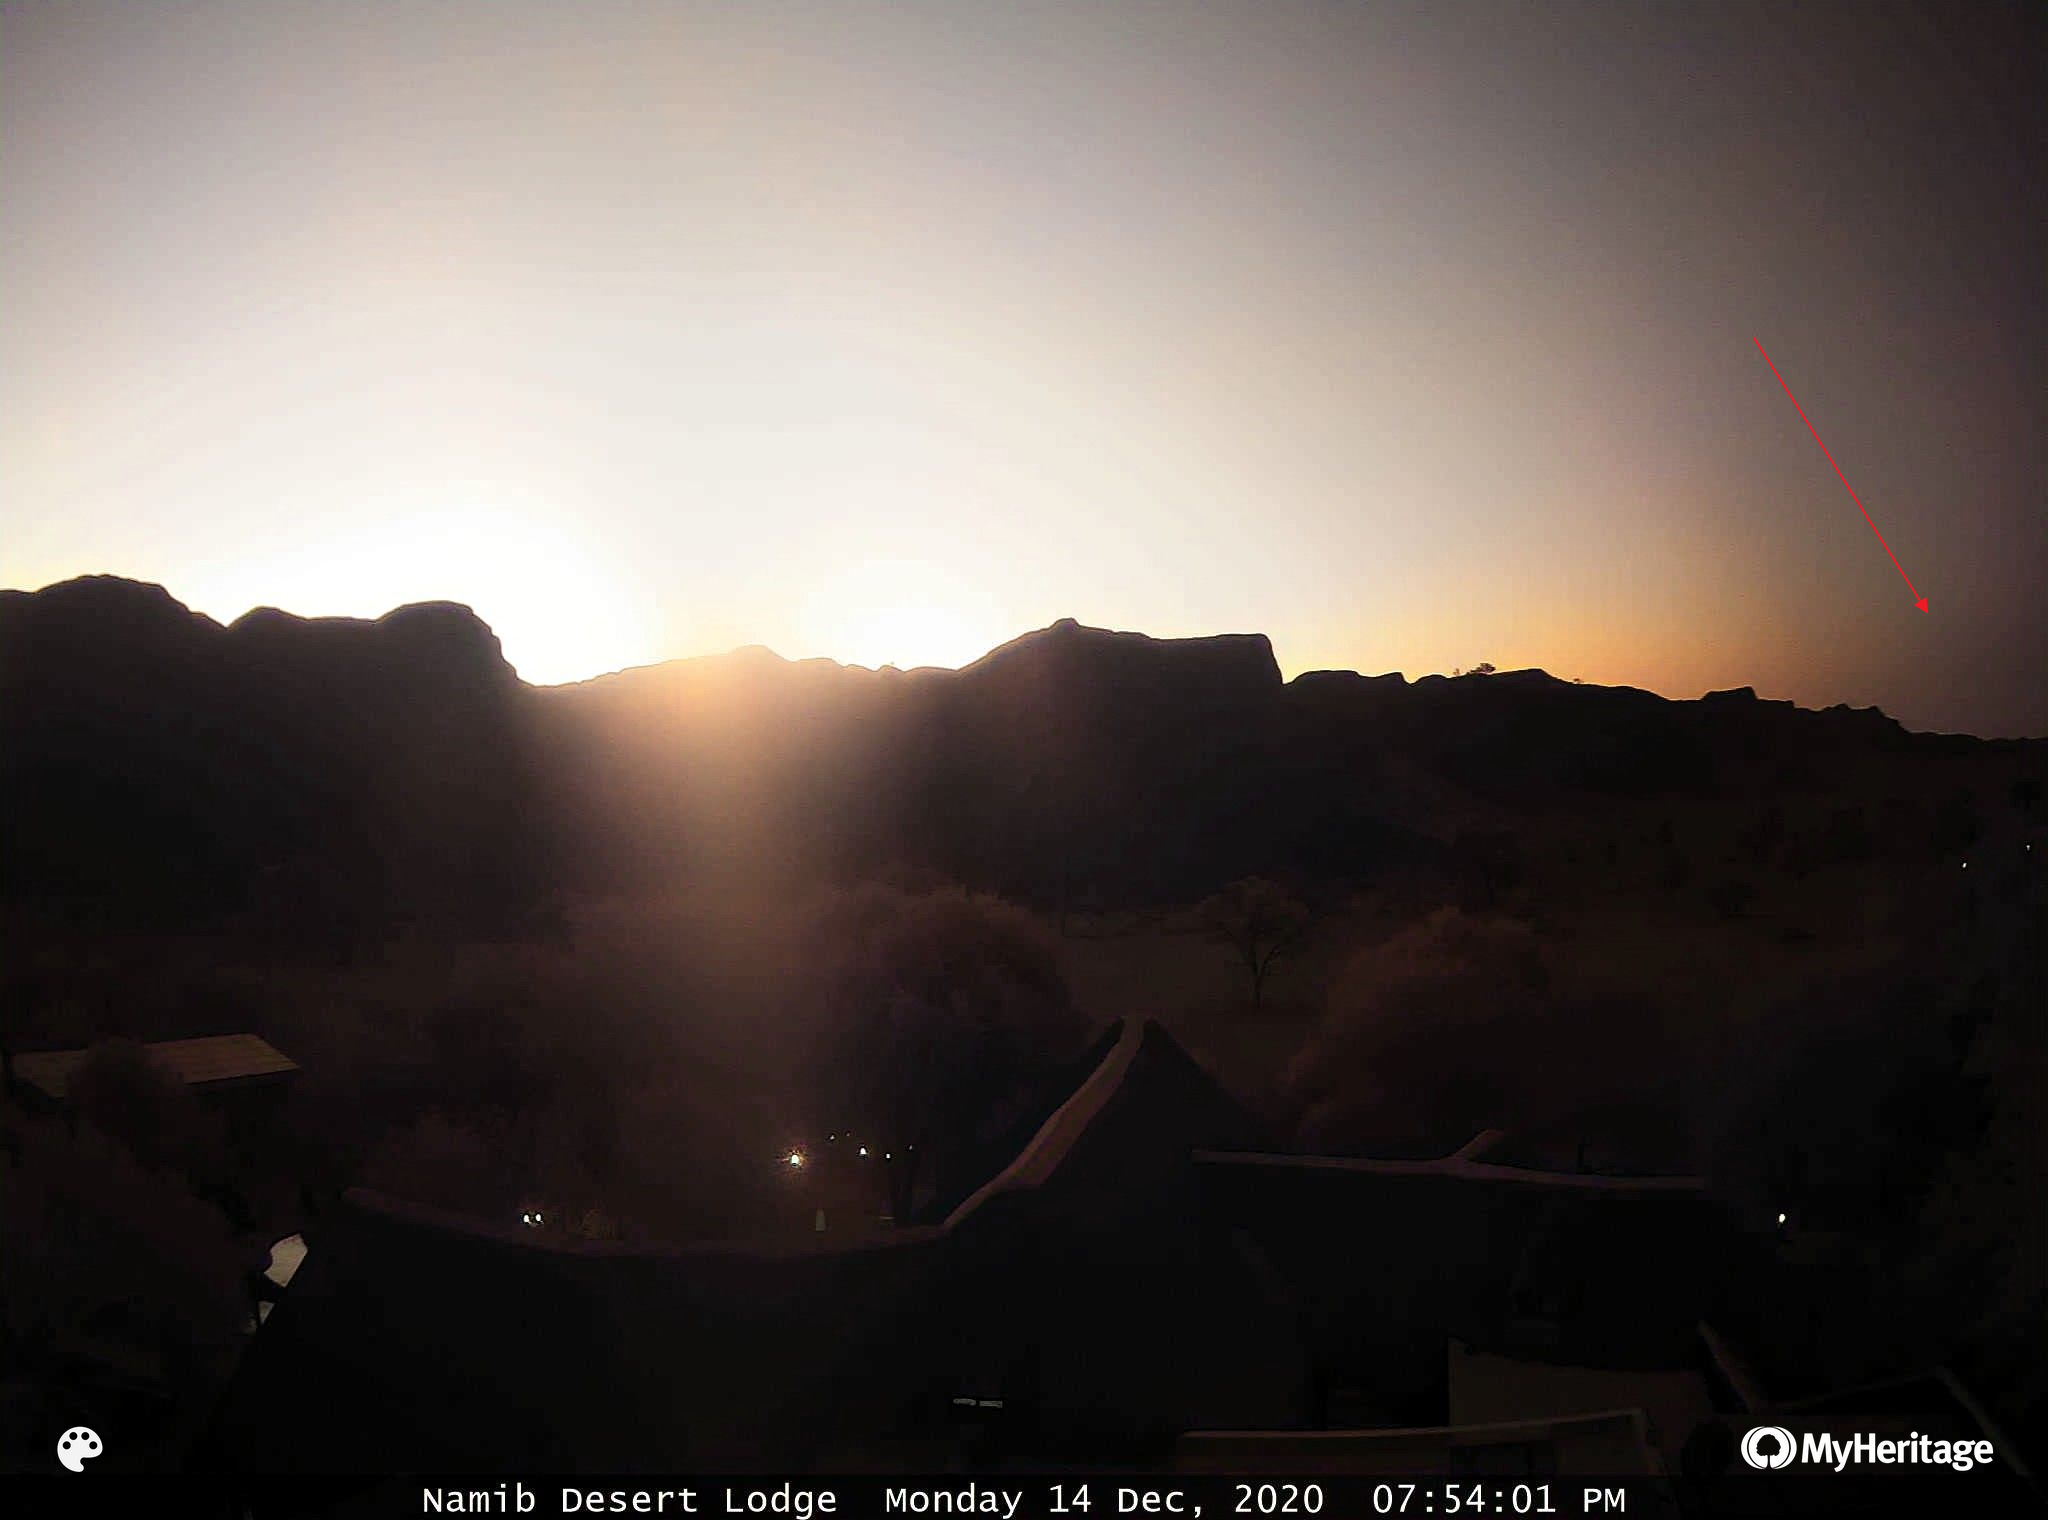 Namib Desert Lodge solar eclipse 2020 umbra inntercepted